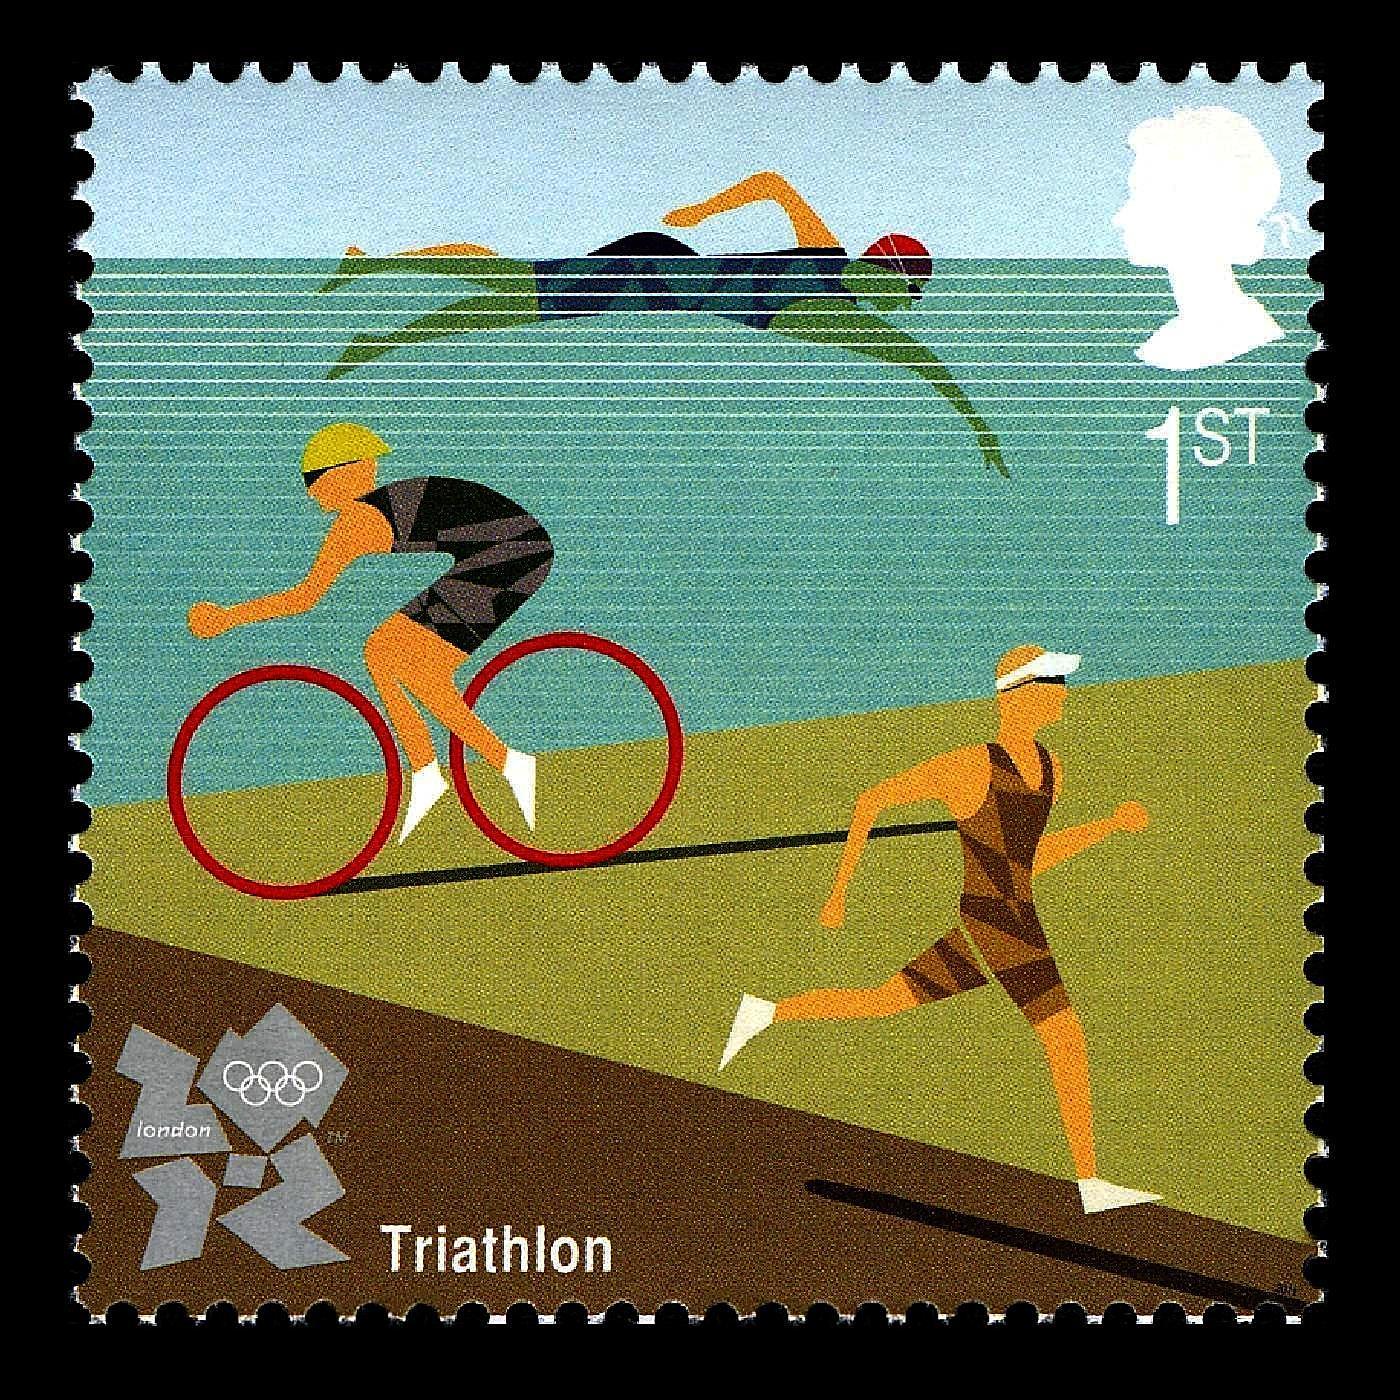 Triathlon - Olympic Games - London 2012